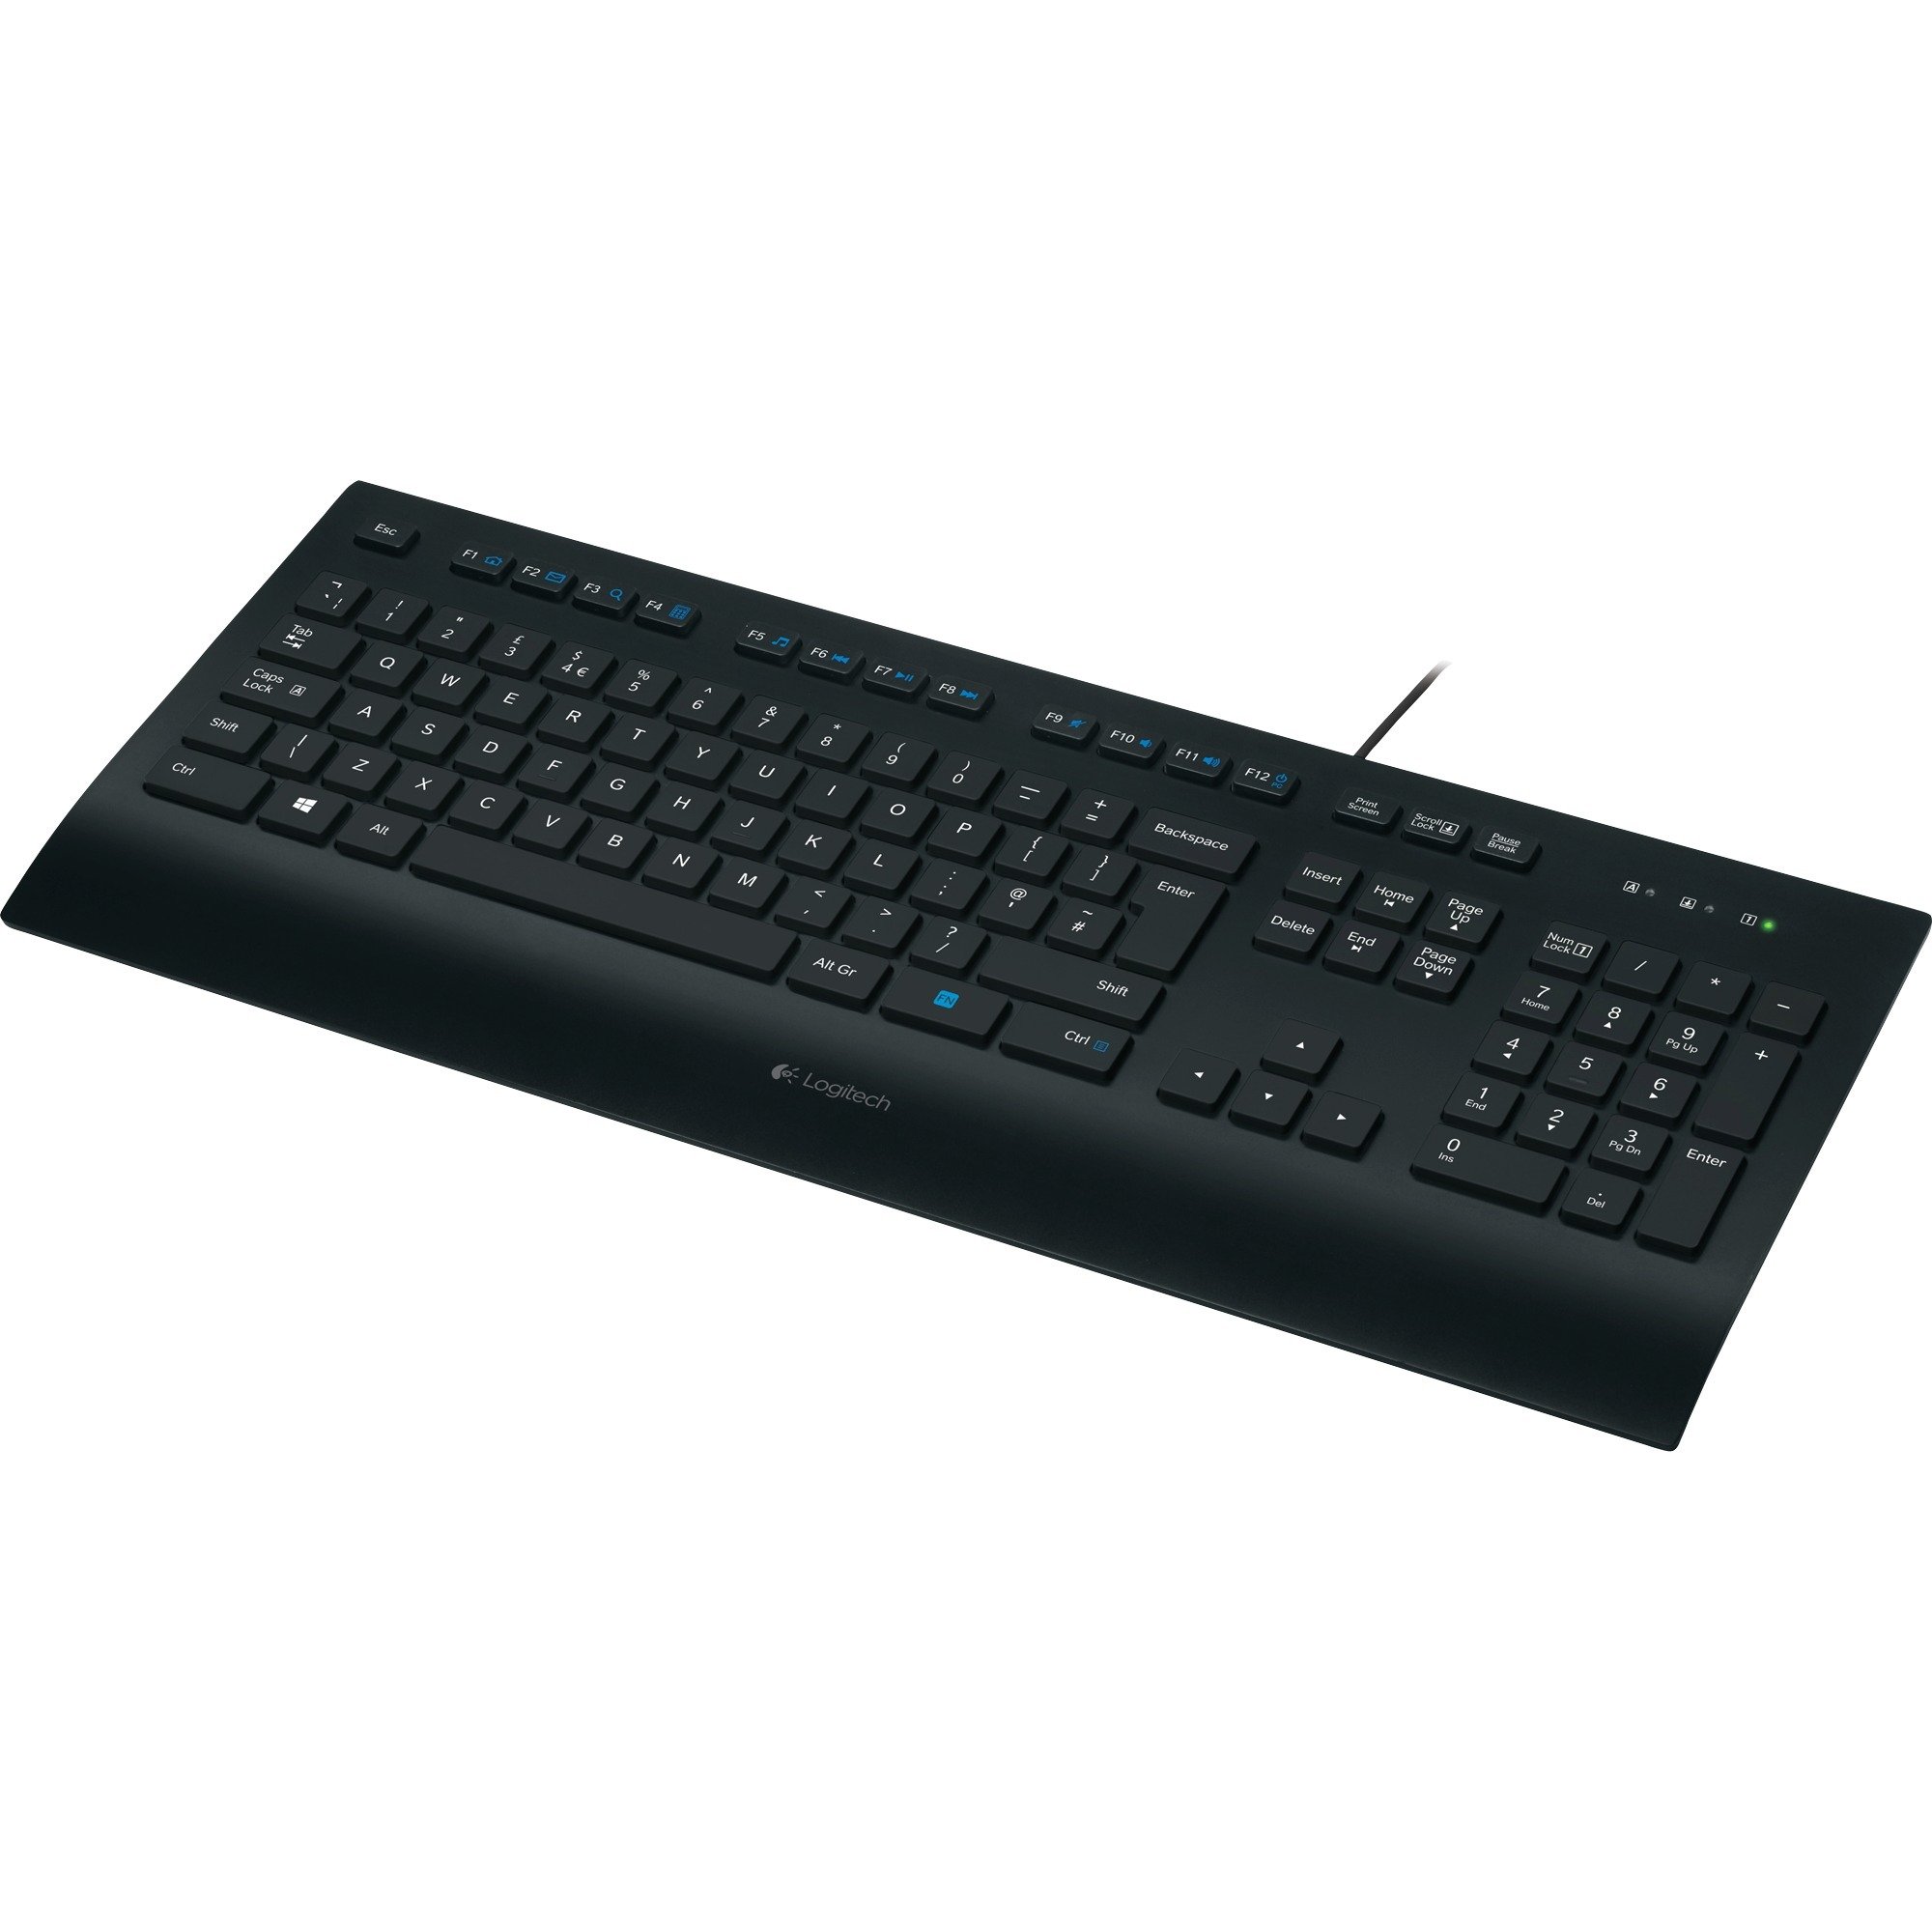 Image of Alternate - K280e Corded, Tastatur online einkaufen bei Alternate